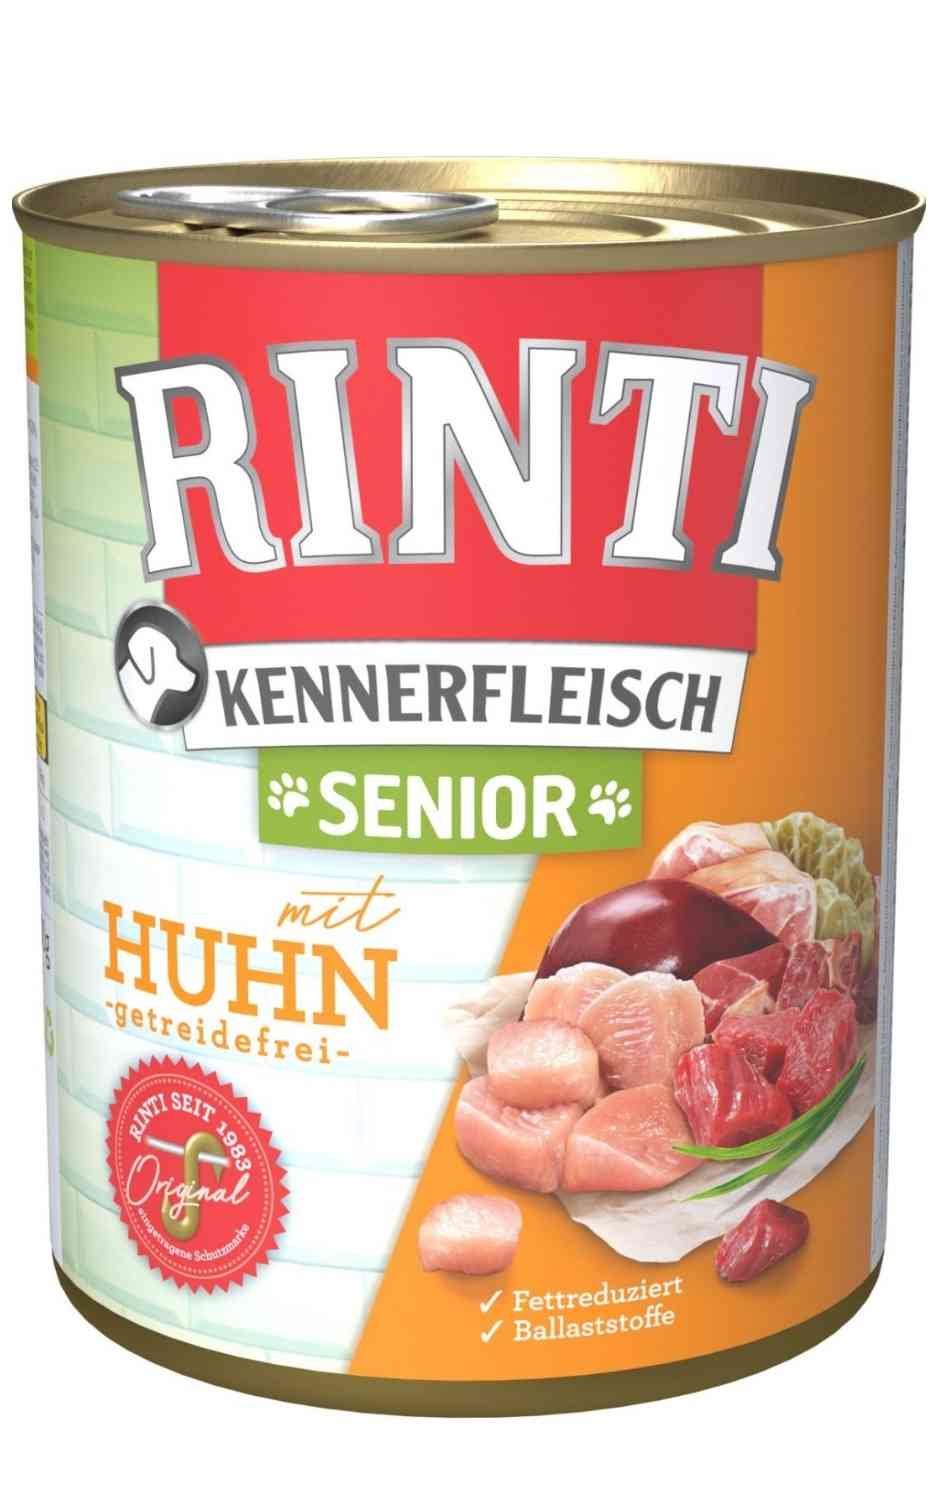 Rinti Kennerfleisch Senior Huhn 800 g Dose